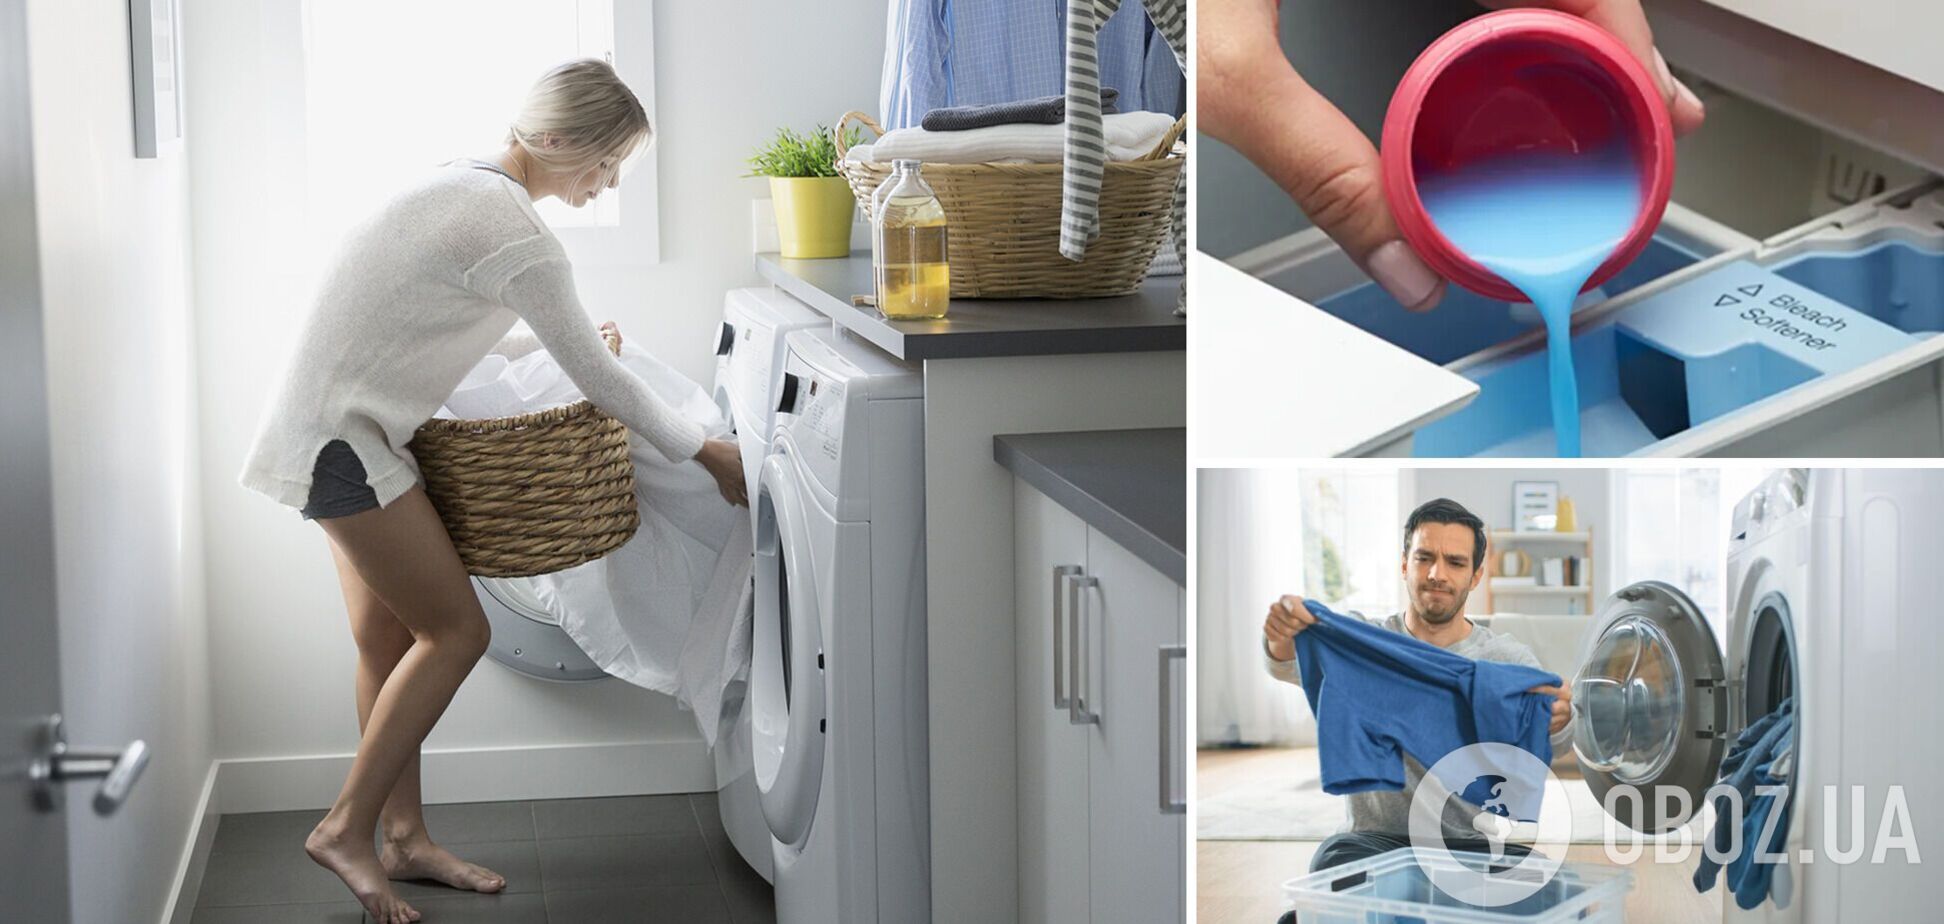 П'ять правил ефективного прання, які порушують майже усі: поради від експерта